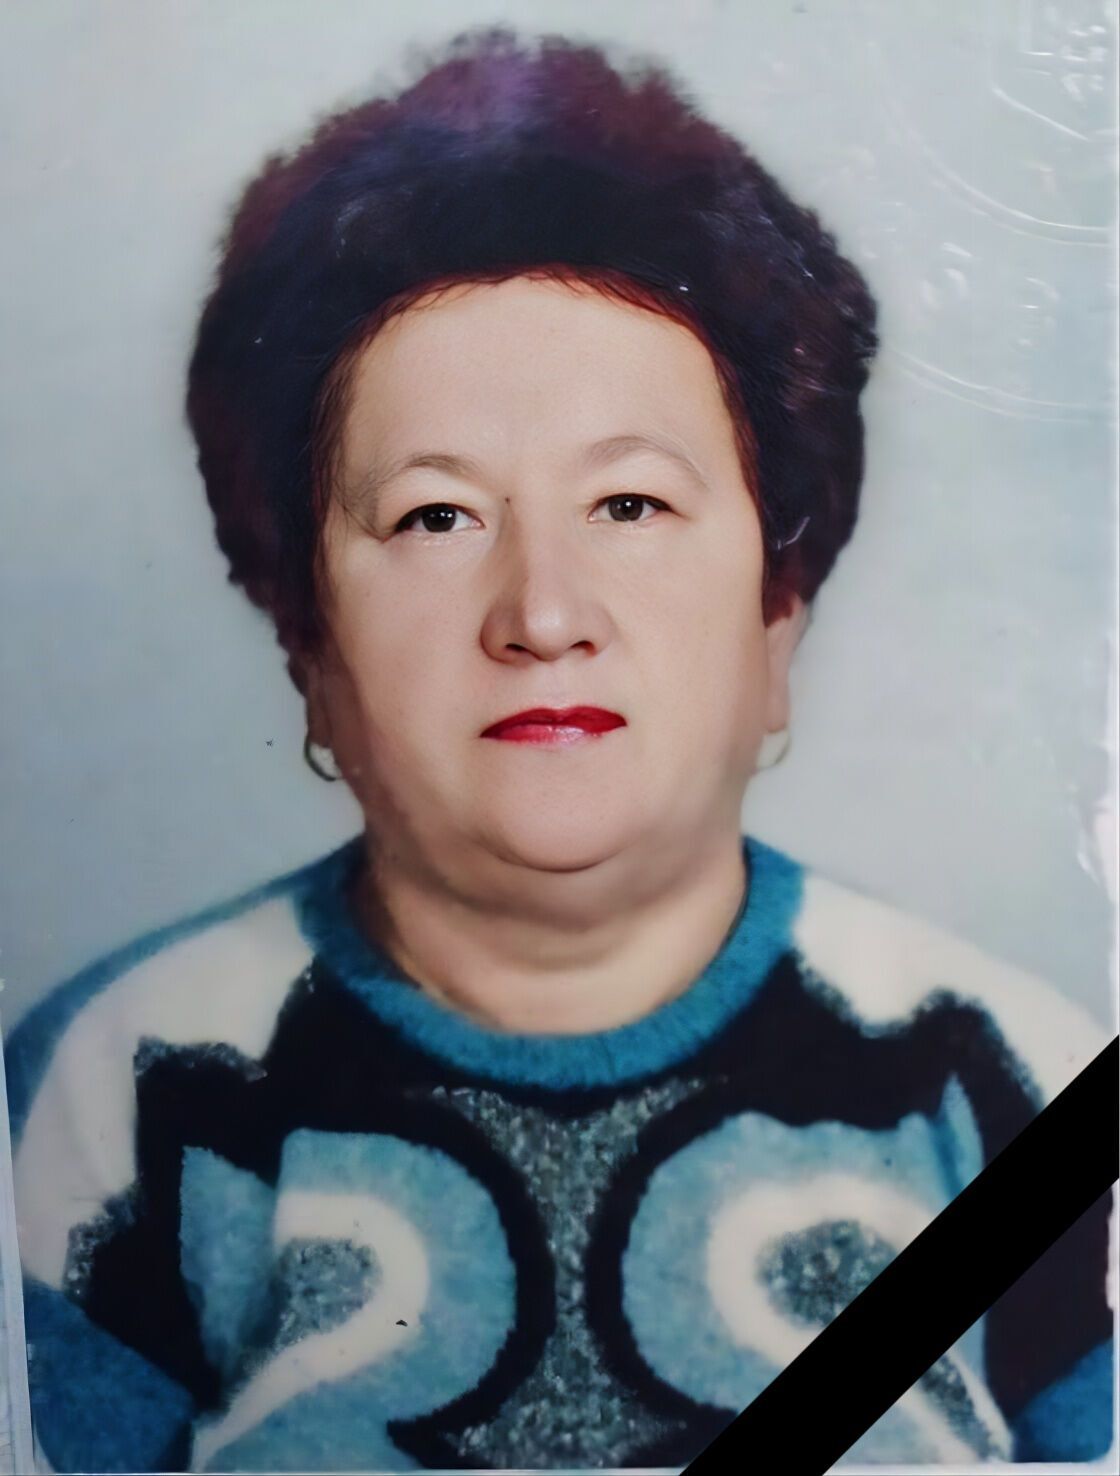 Не витримала втрати: на Кіровоградщині матір військового померла після звістки про смерть сина